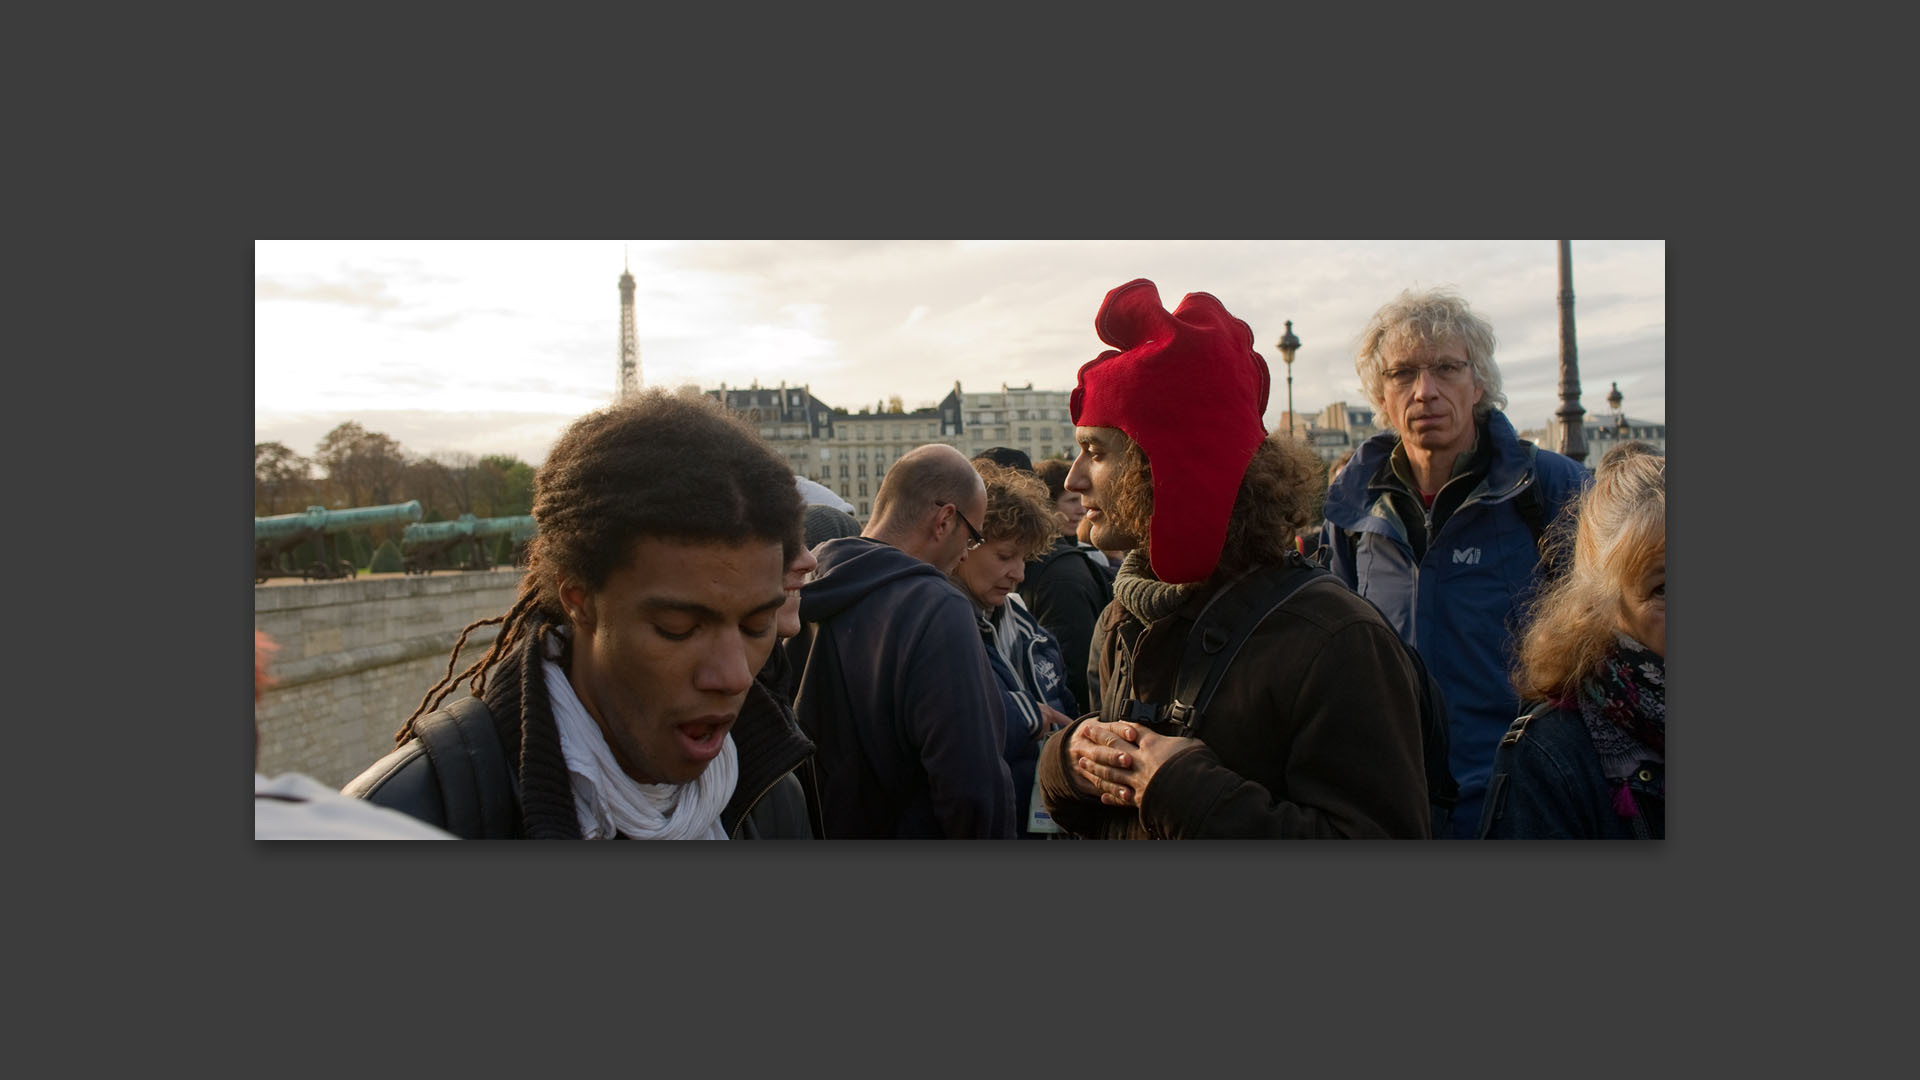 Manifestant avec un bonnet phrygien, place des Invalides, à Paris.